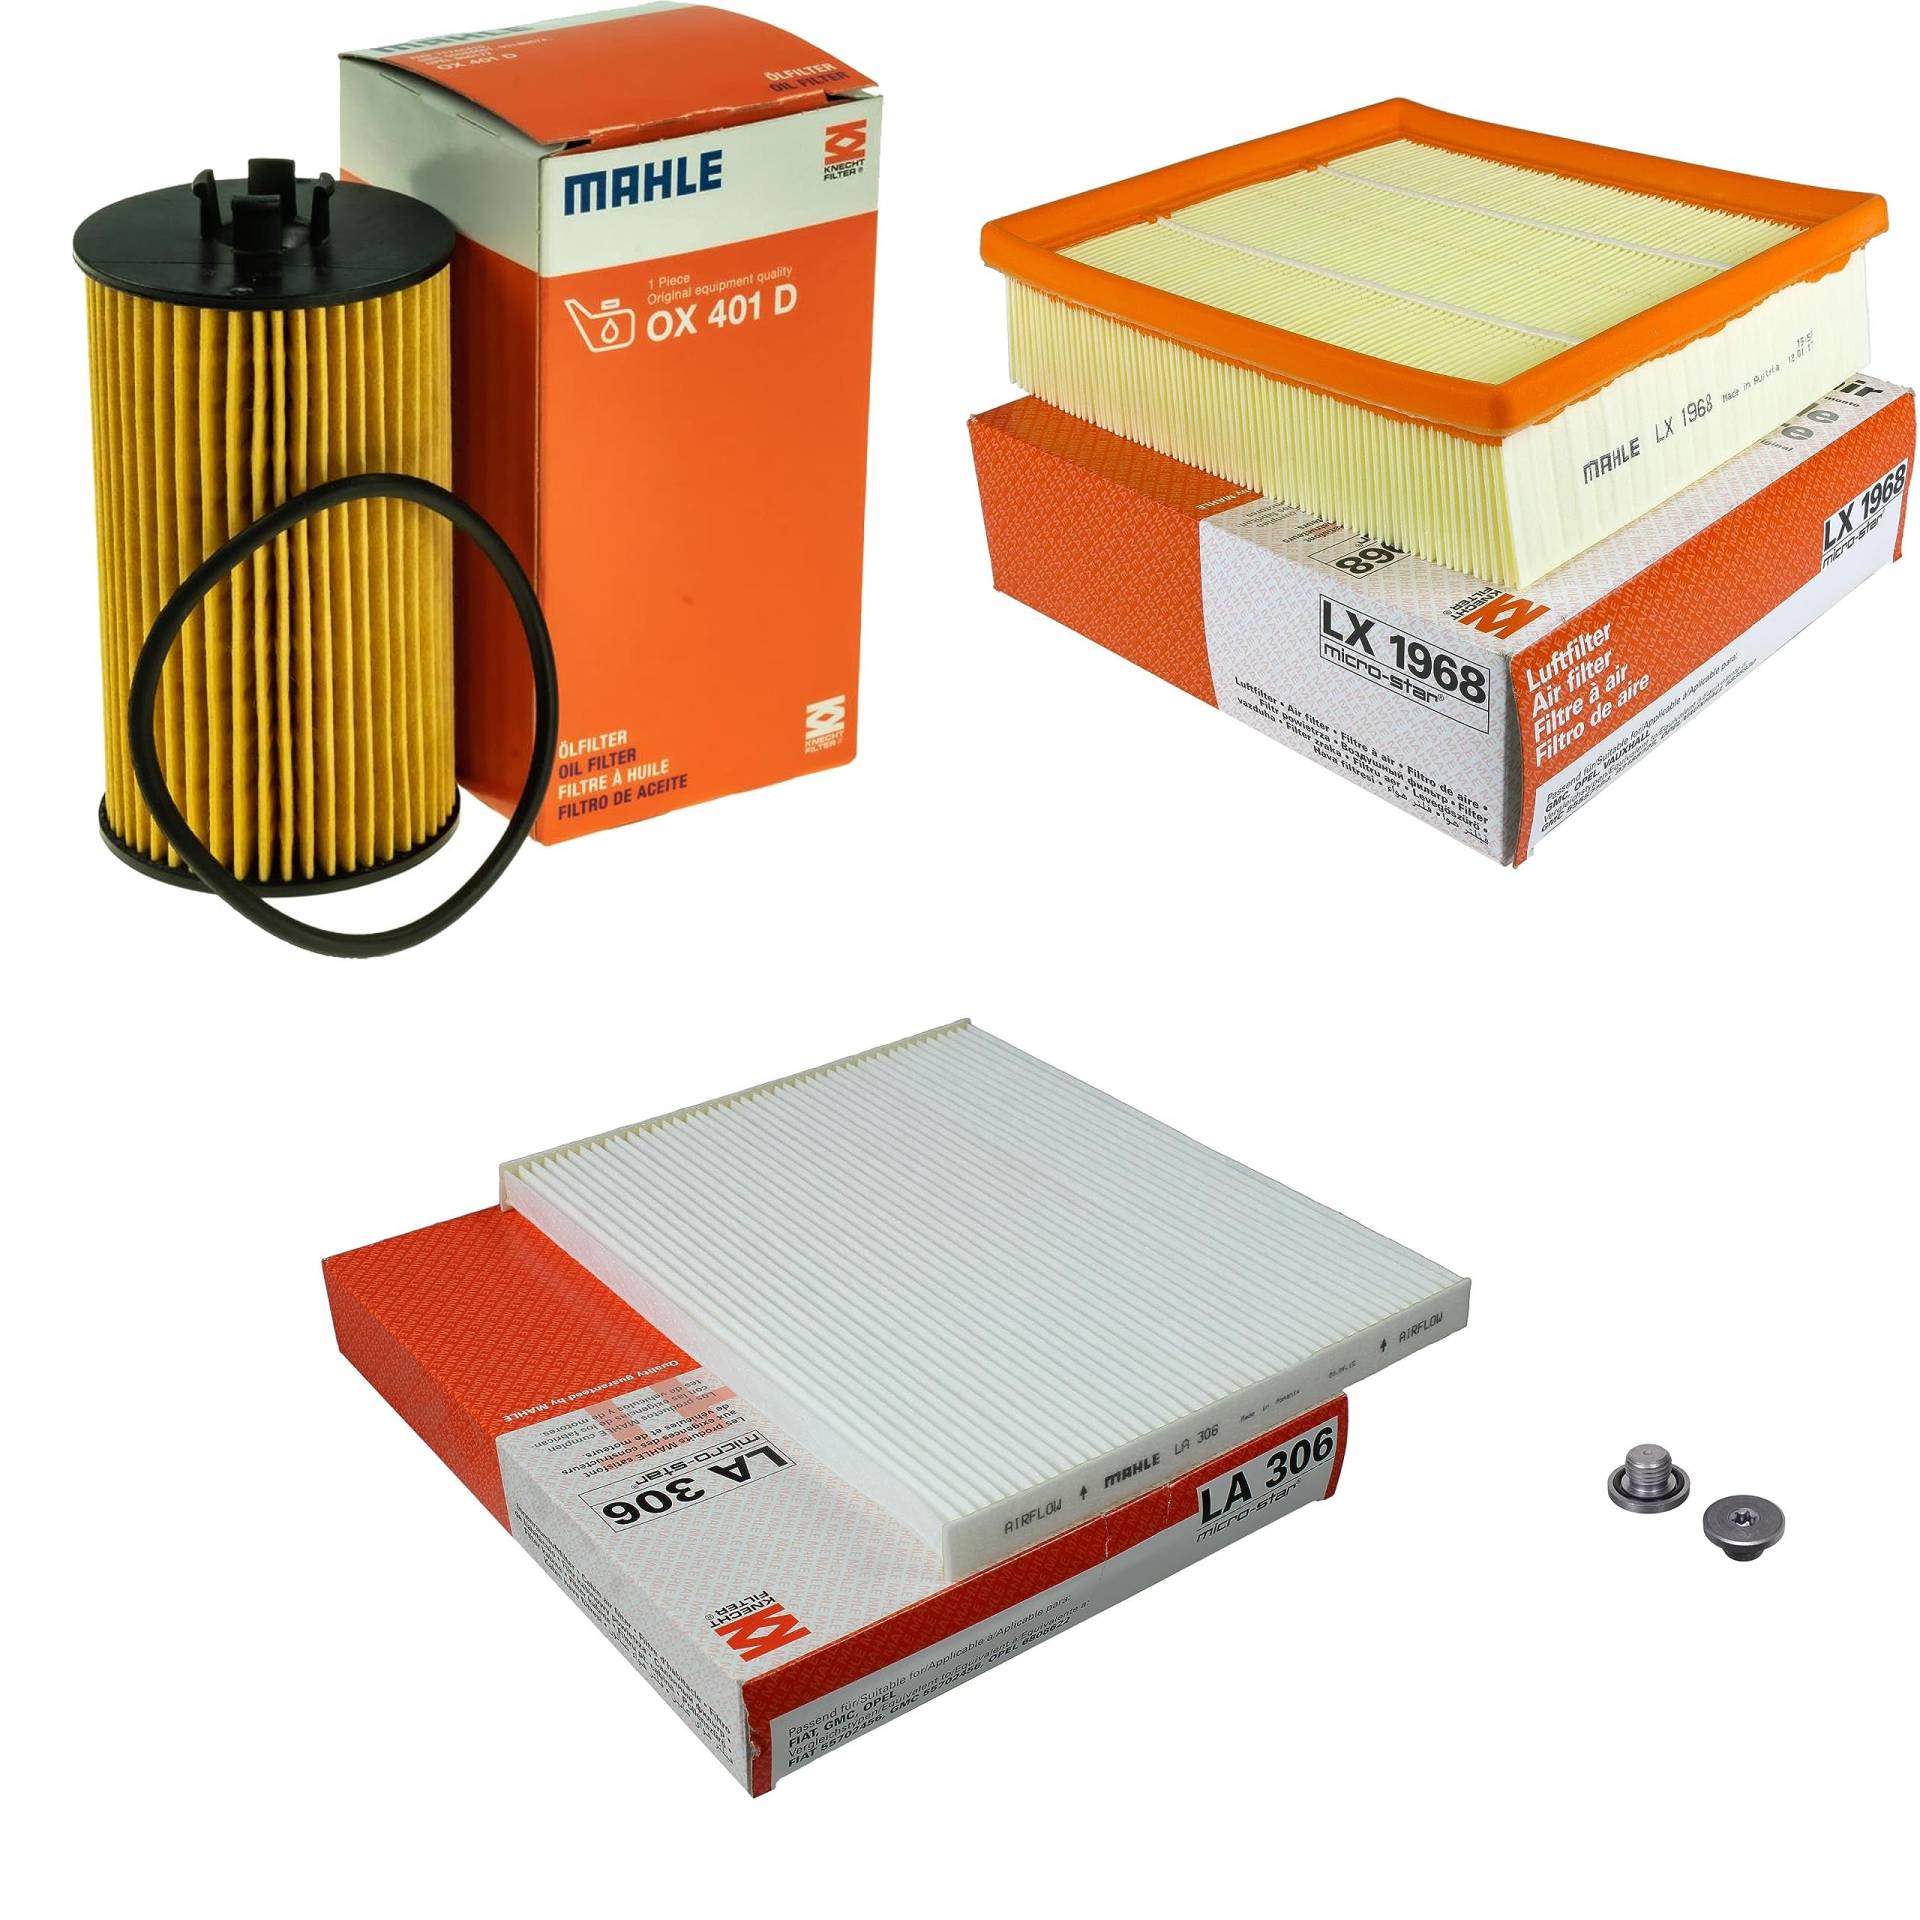 Inspektionspaket Wartungspaket Filterset mit Ölfilter OX 401D, Luftfilter LX 1968, Innenraumfilter LA 306, Verschlussschraube von EISENFELS